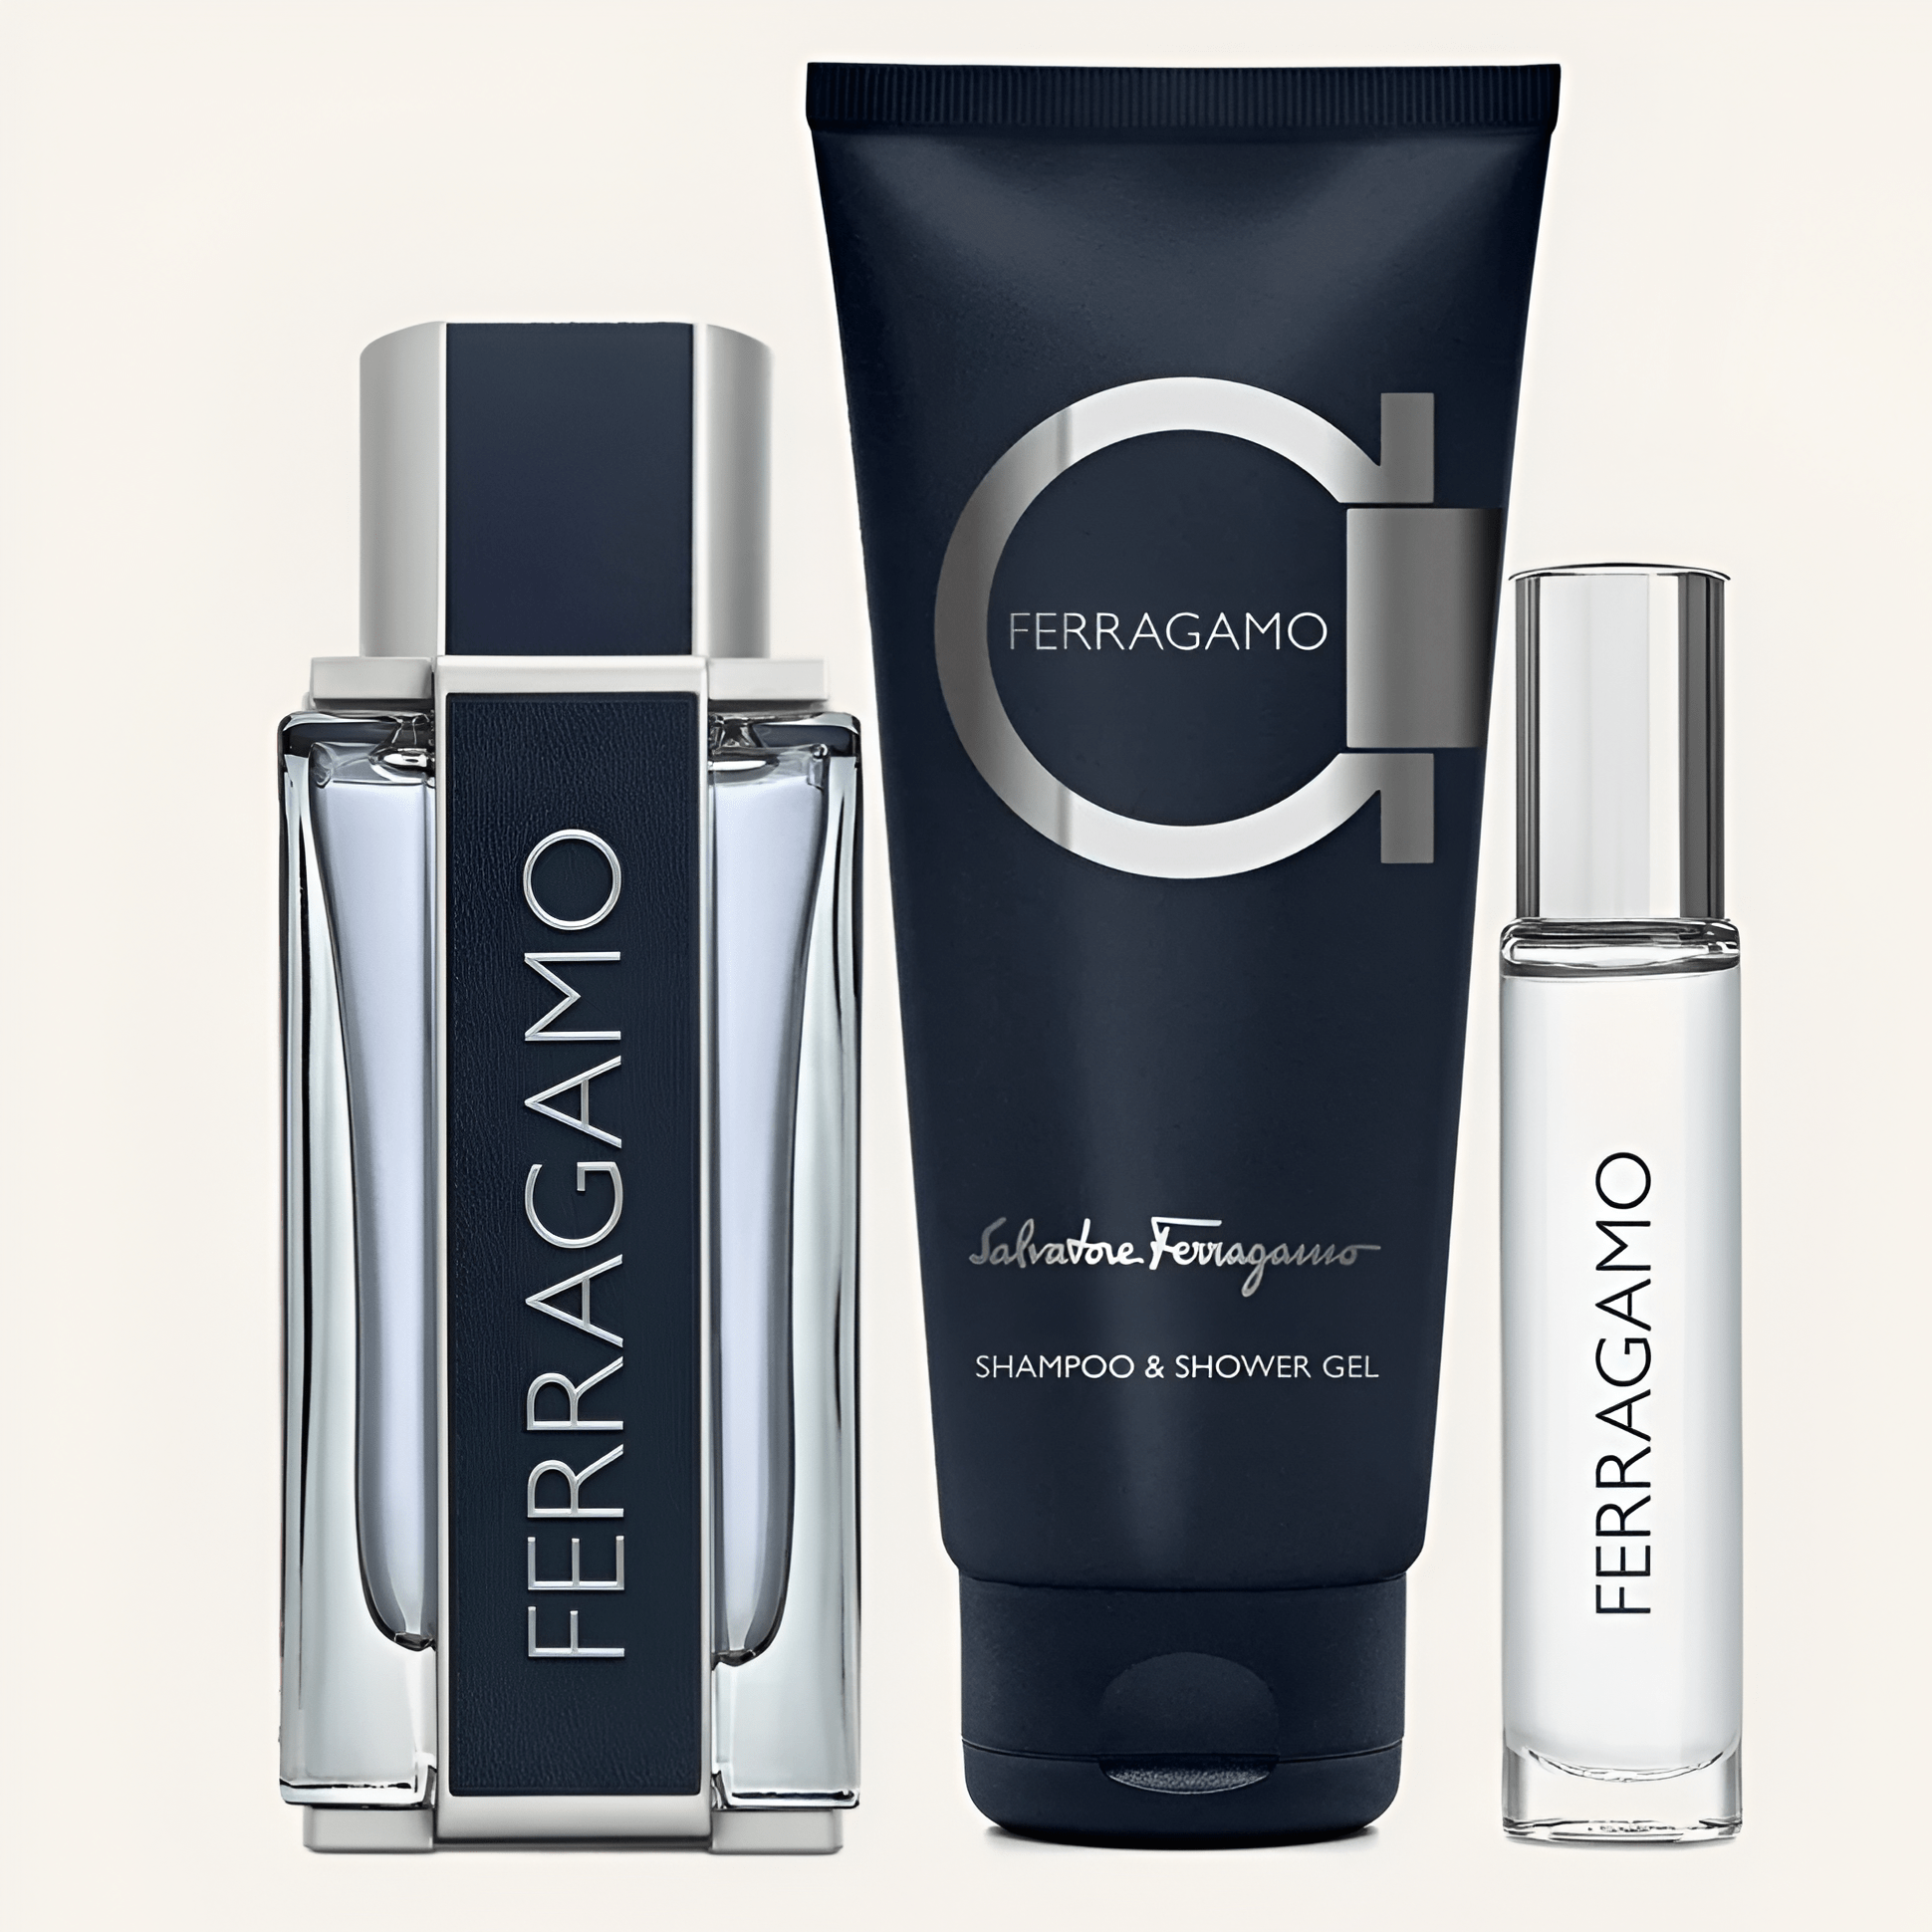 Salvatore Ferragamo Ferragamo EDT Shower Set | My Perfume Shop Australia